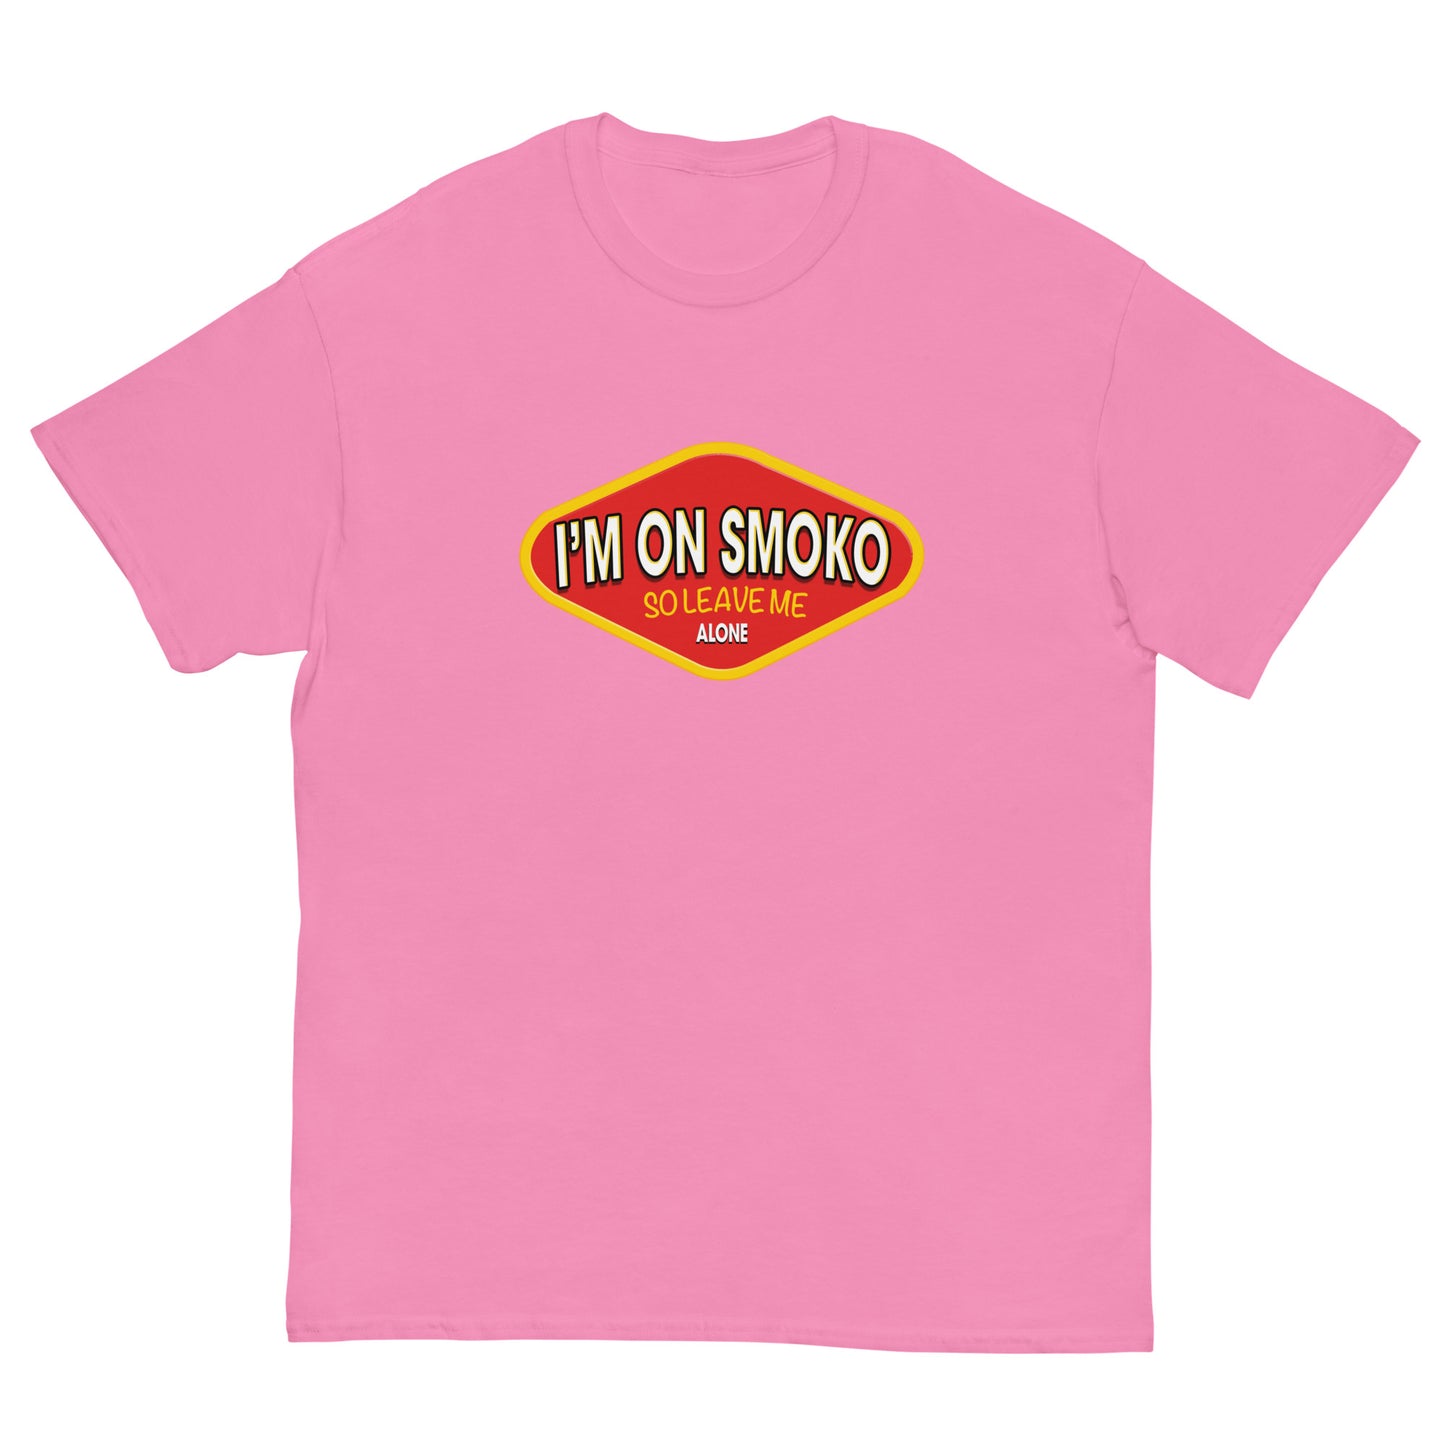 Im on smoko vegemite screen printed t-shirt